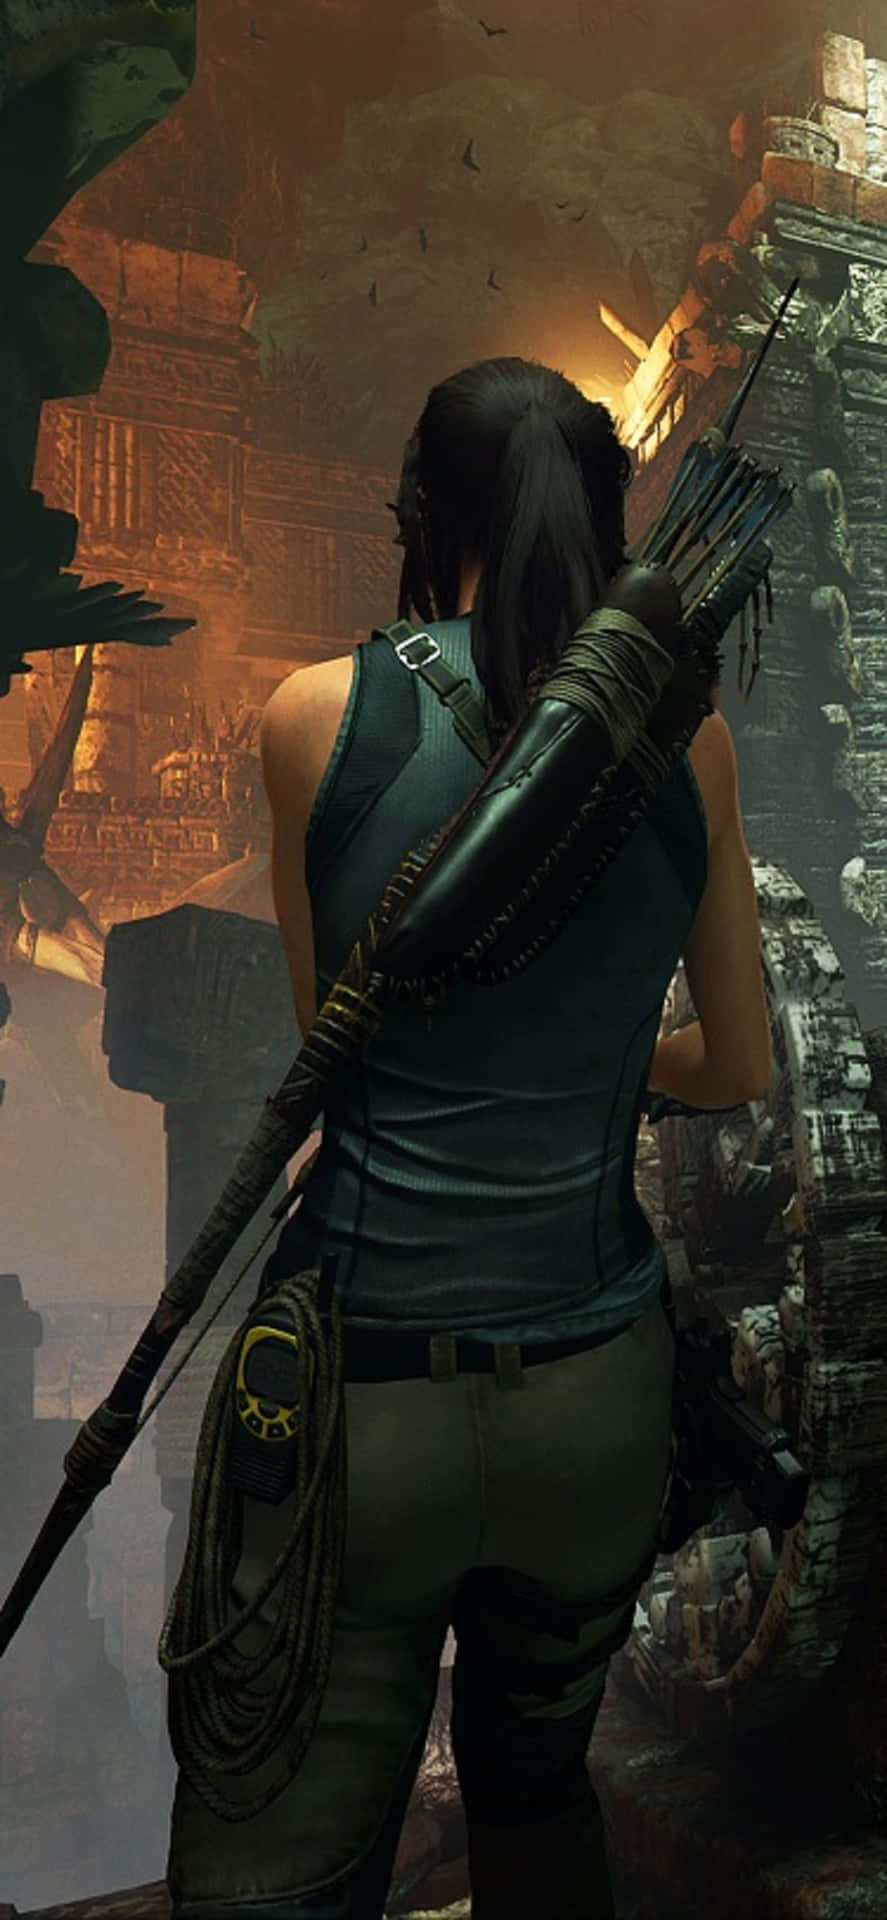 Sumérgeteen La Sombra Del Tomb Raider.